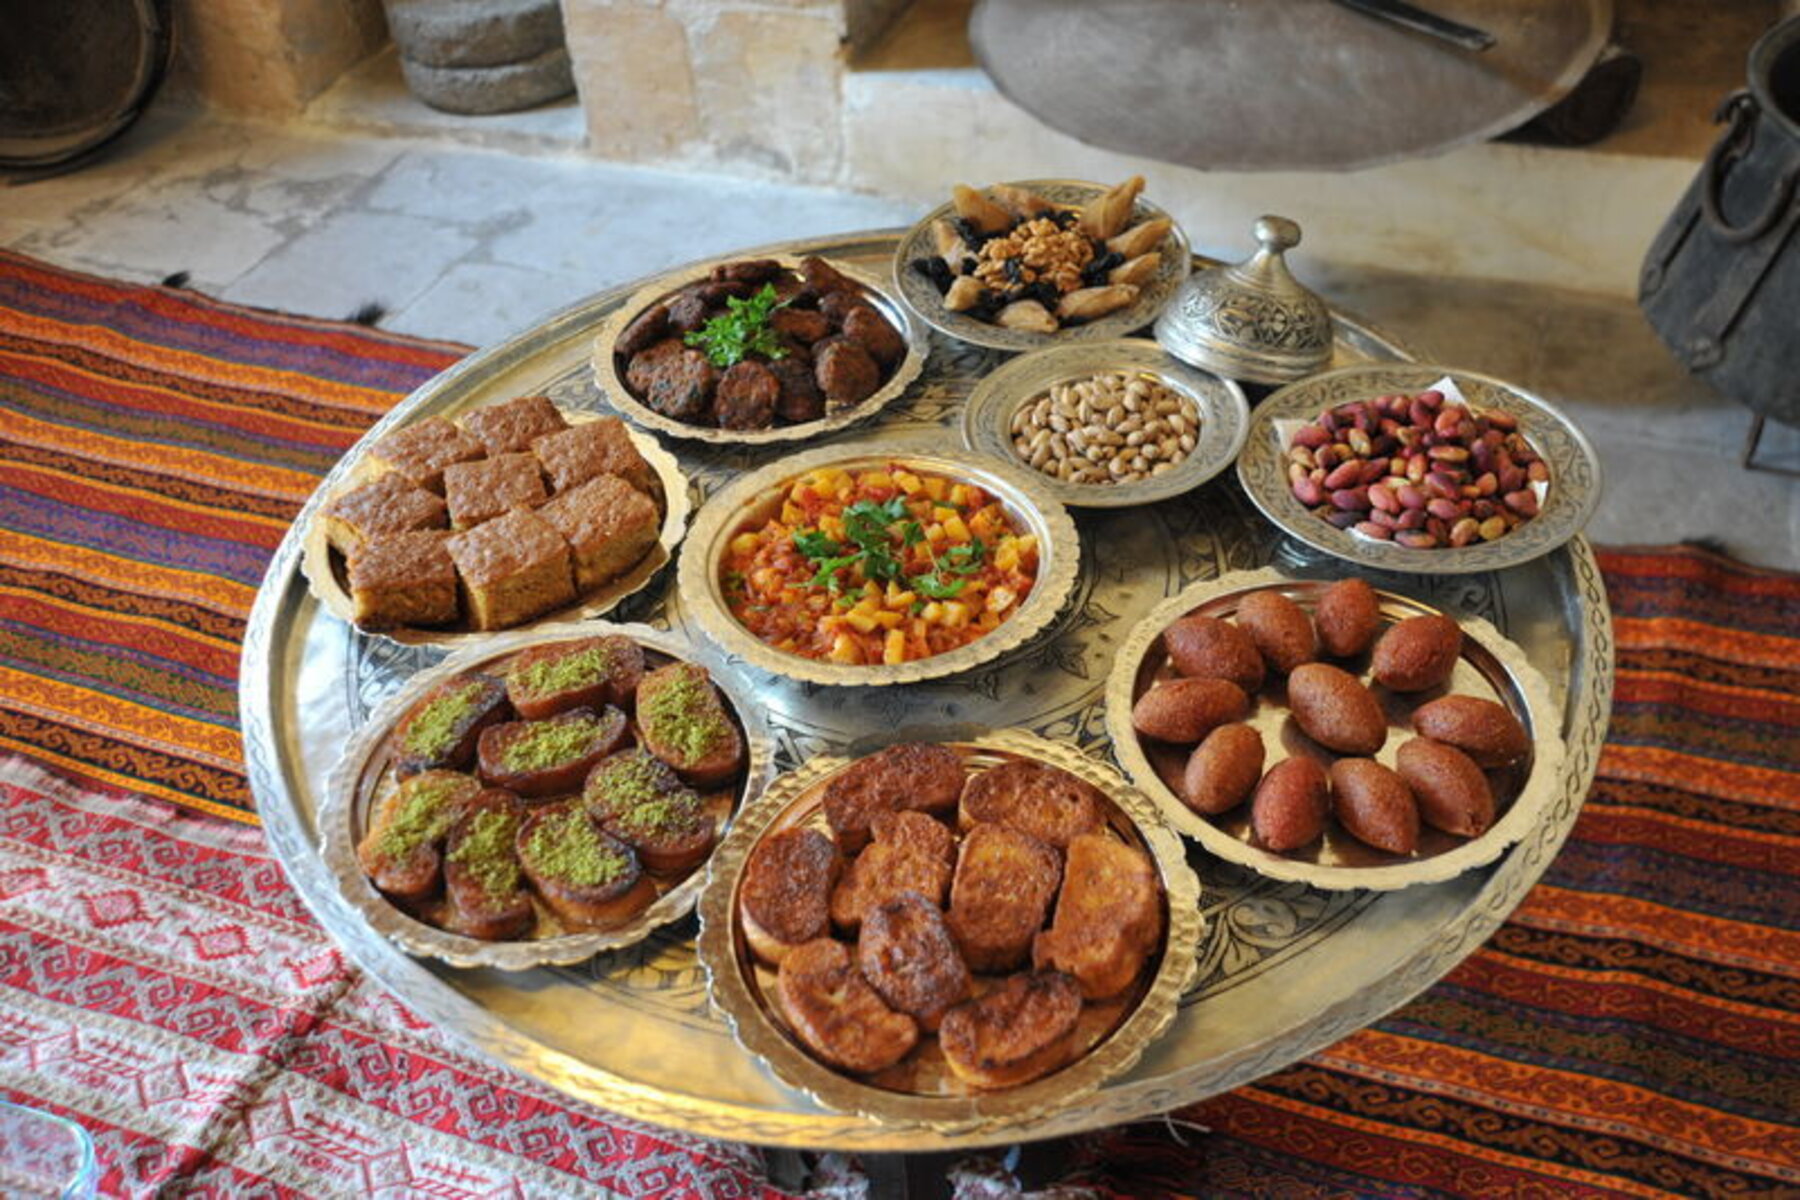 يضم مطبخ غازي عنتاب العديد من الأطعمة والمأكولات المميزة التي تنافس المطابخ العربية والعالمية وتتضمن مزيجاً من النكهات والتوابل